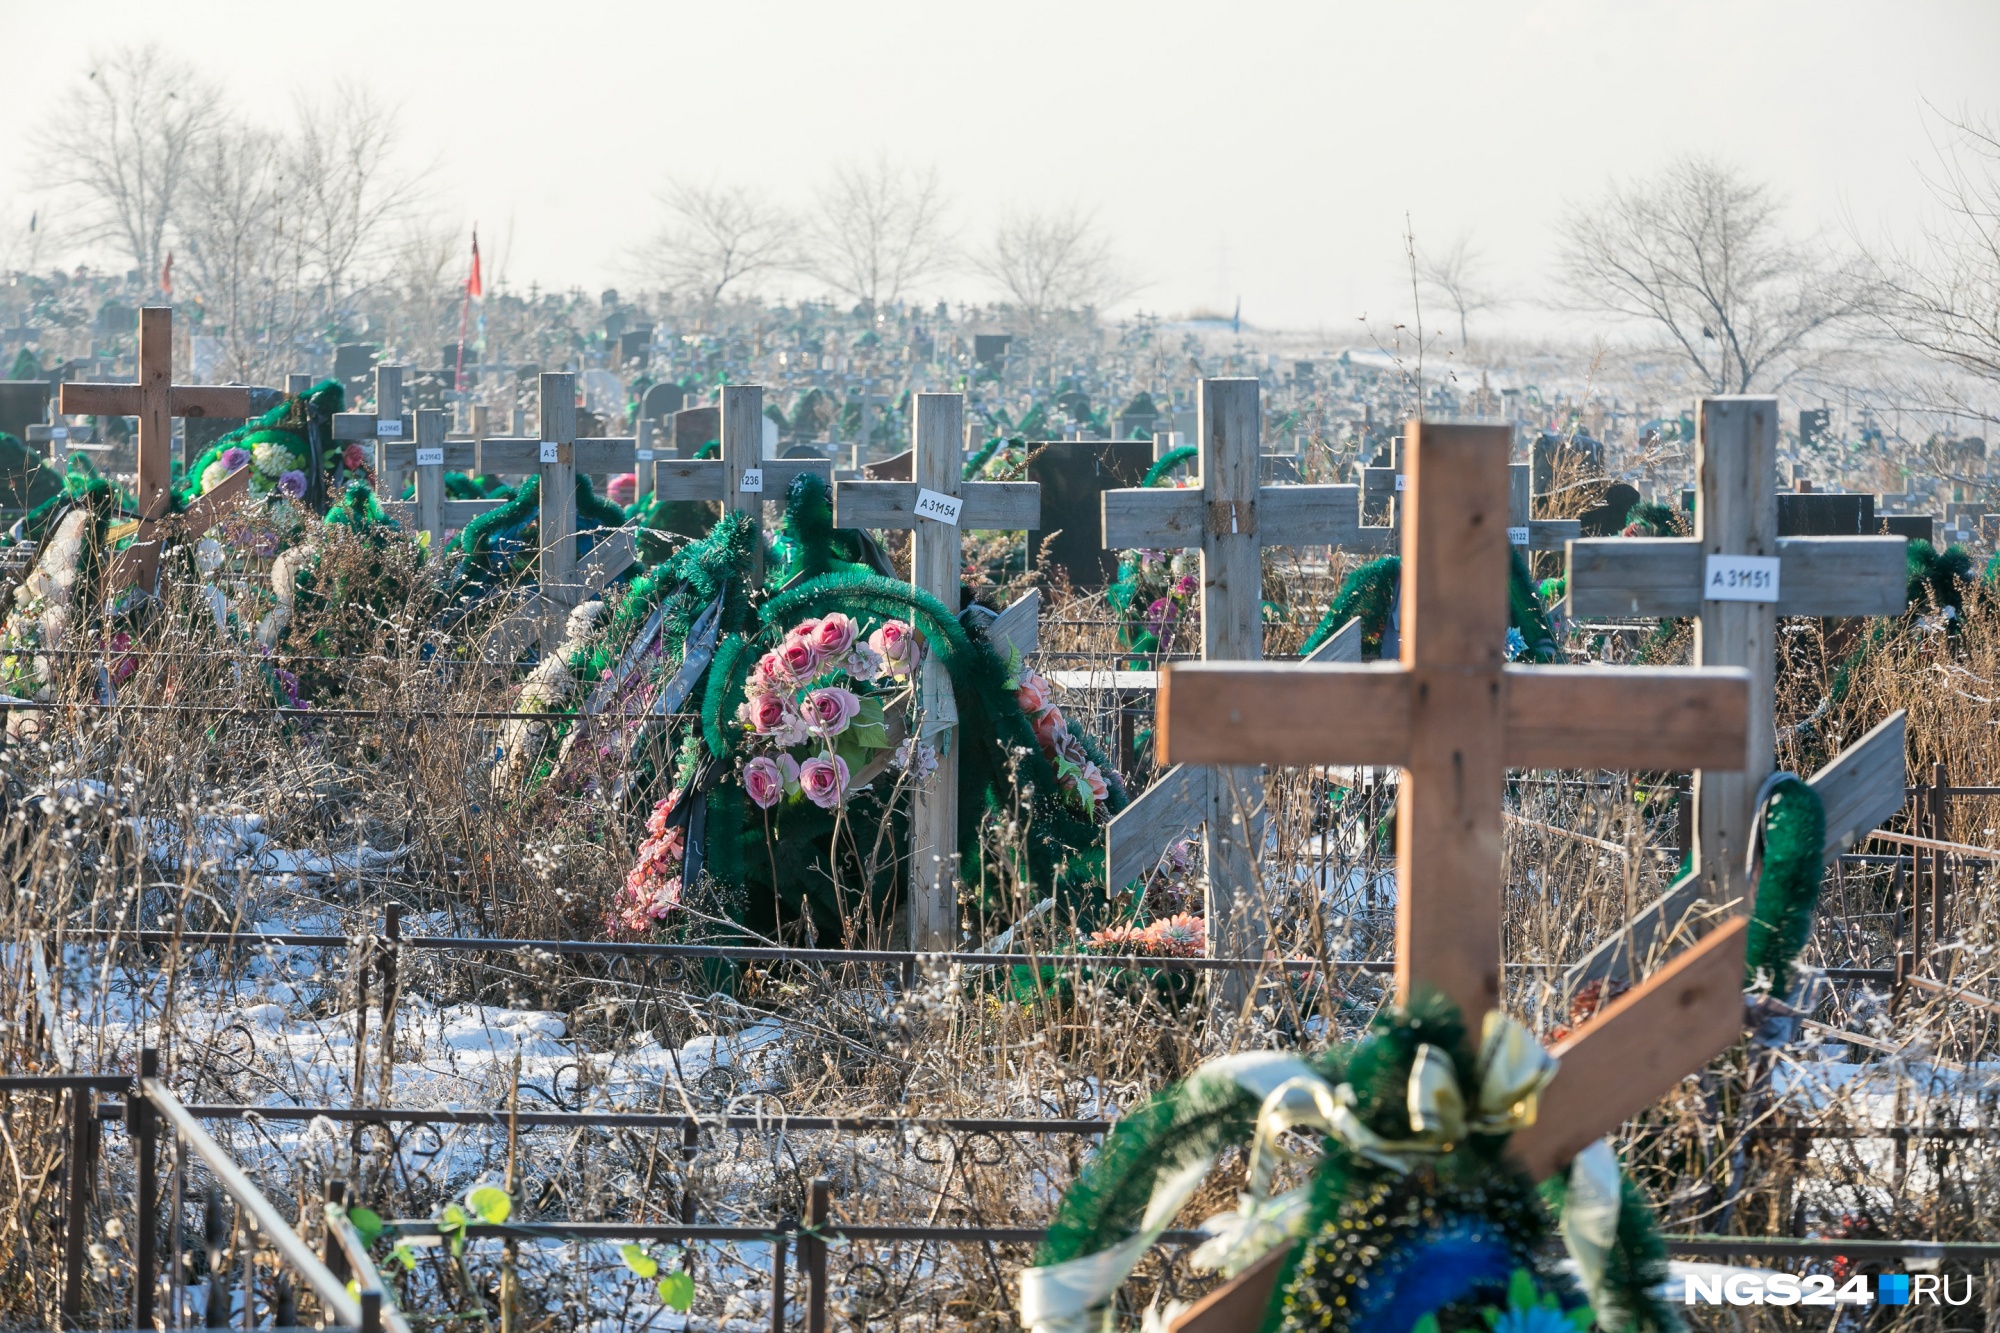 Зыковское кладбище Красноярск